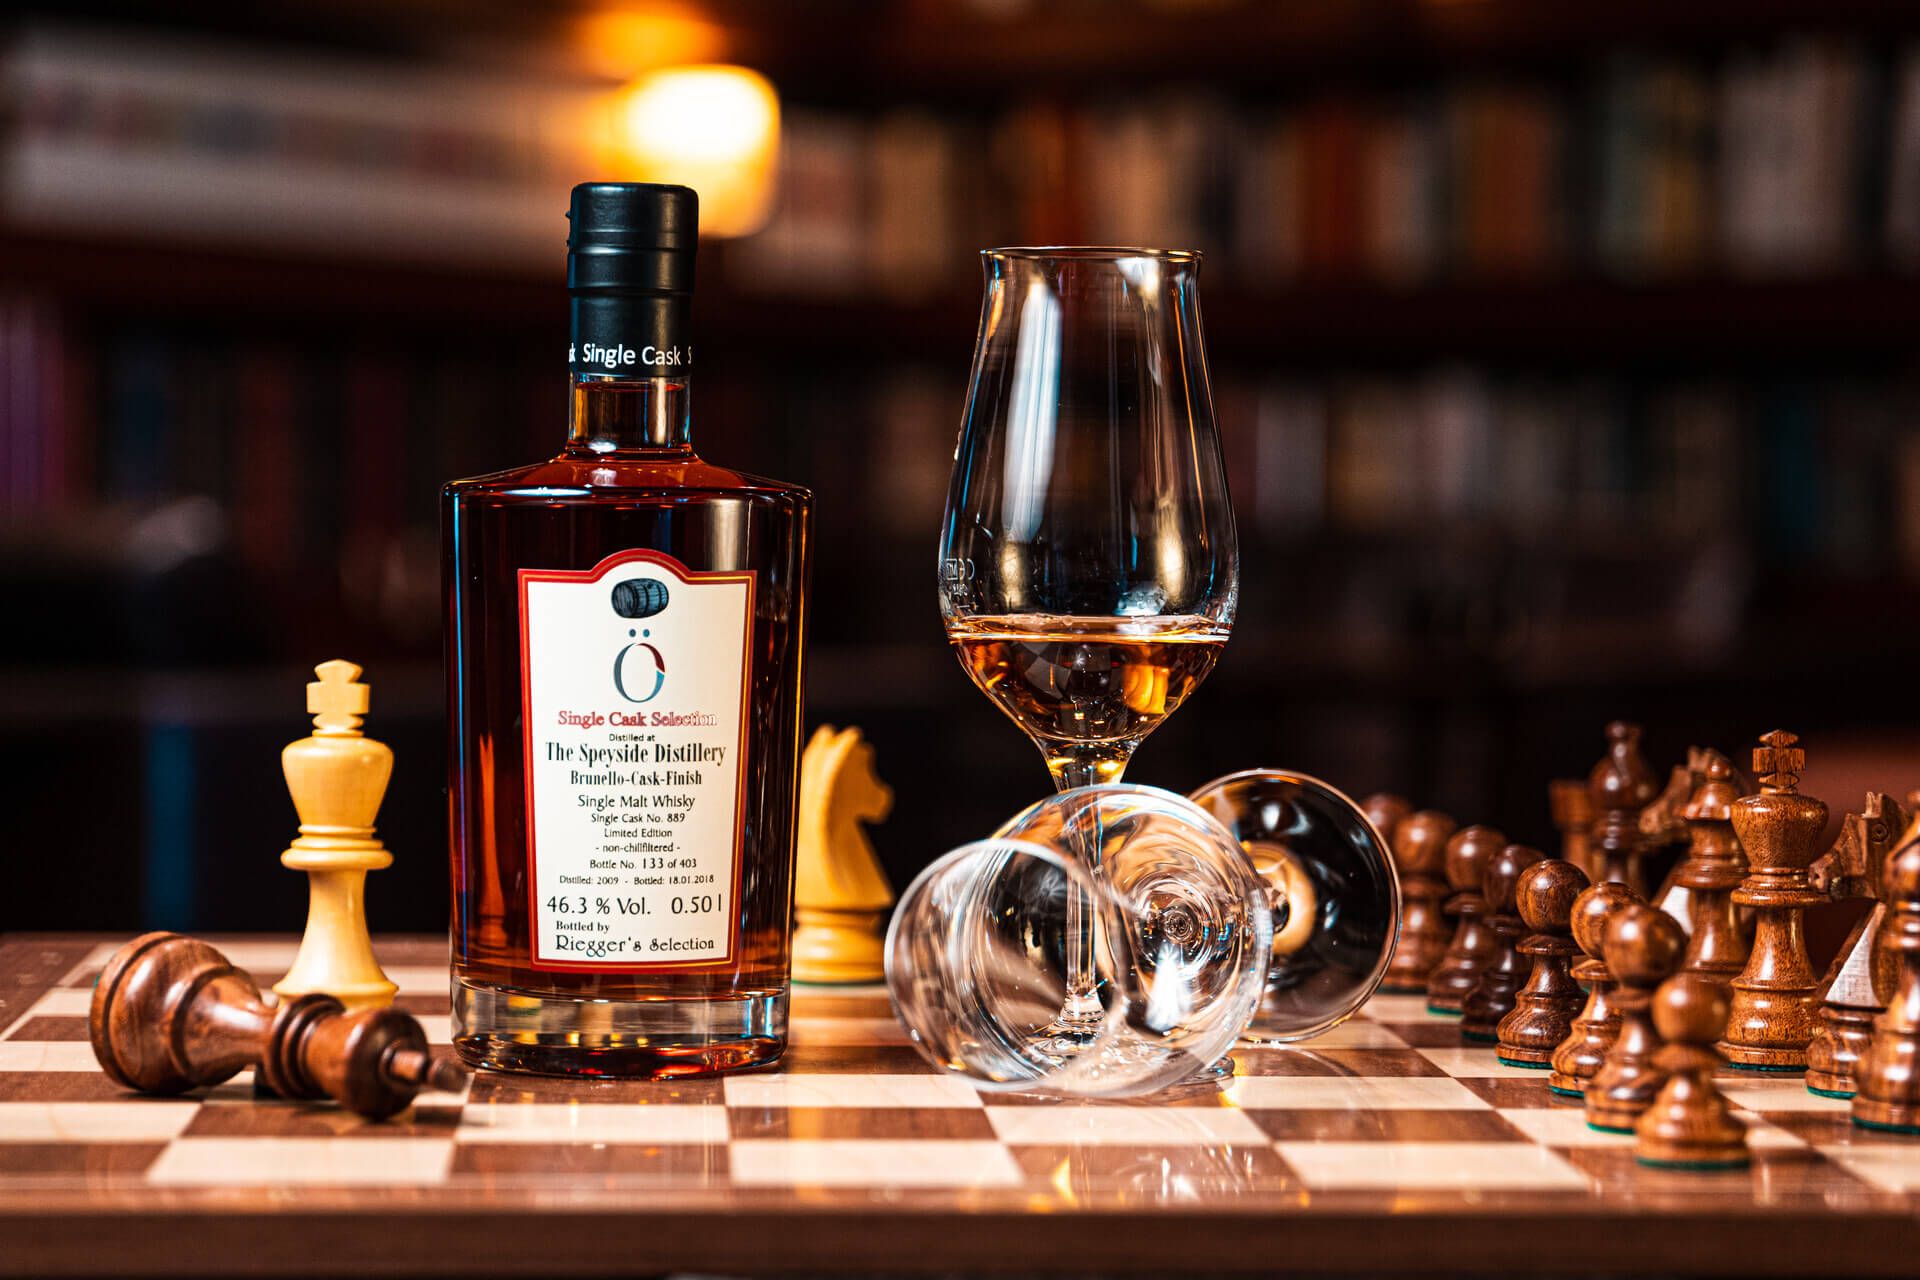 Whisky-Flasche steht neben zwei Gläsern auf einem Schachbrett